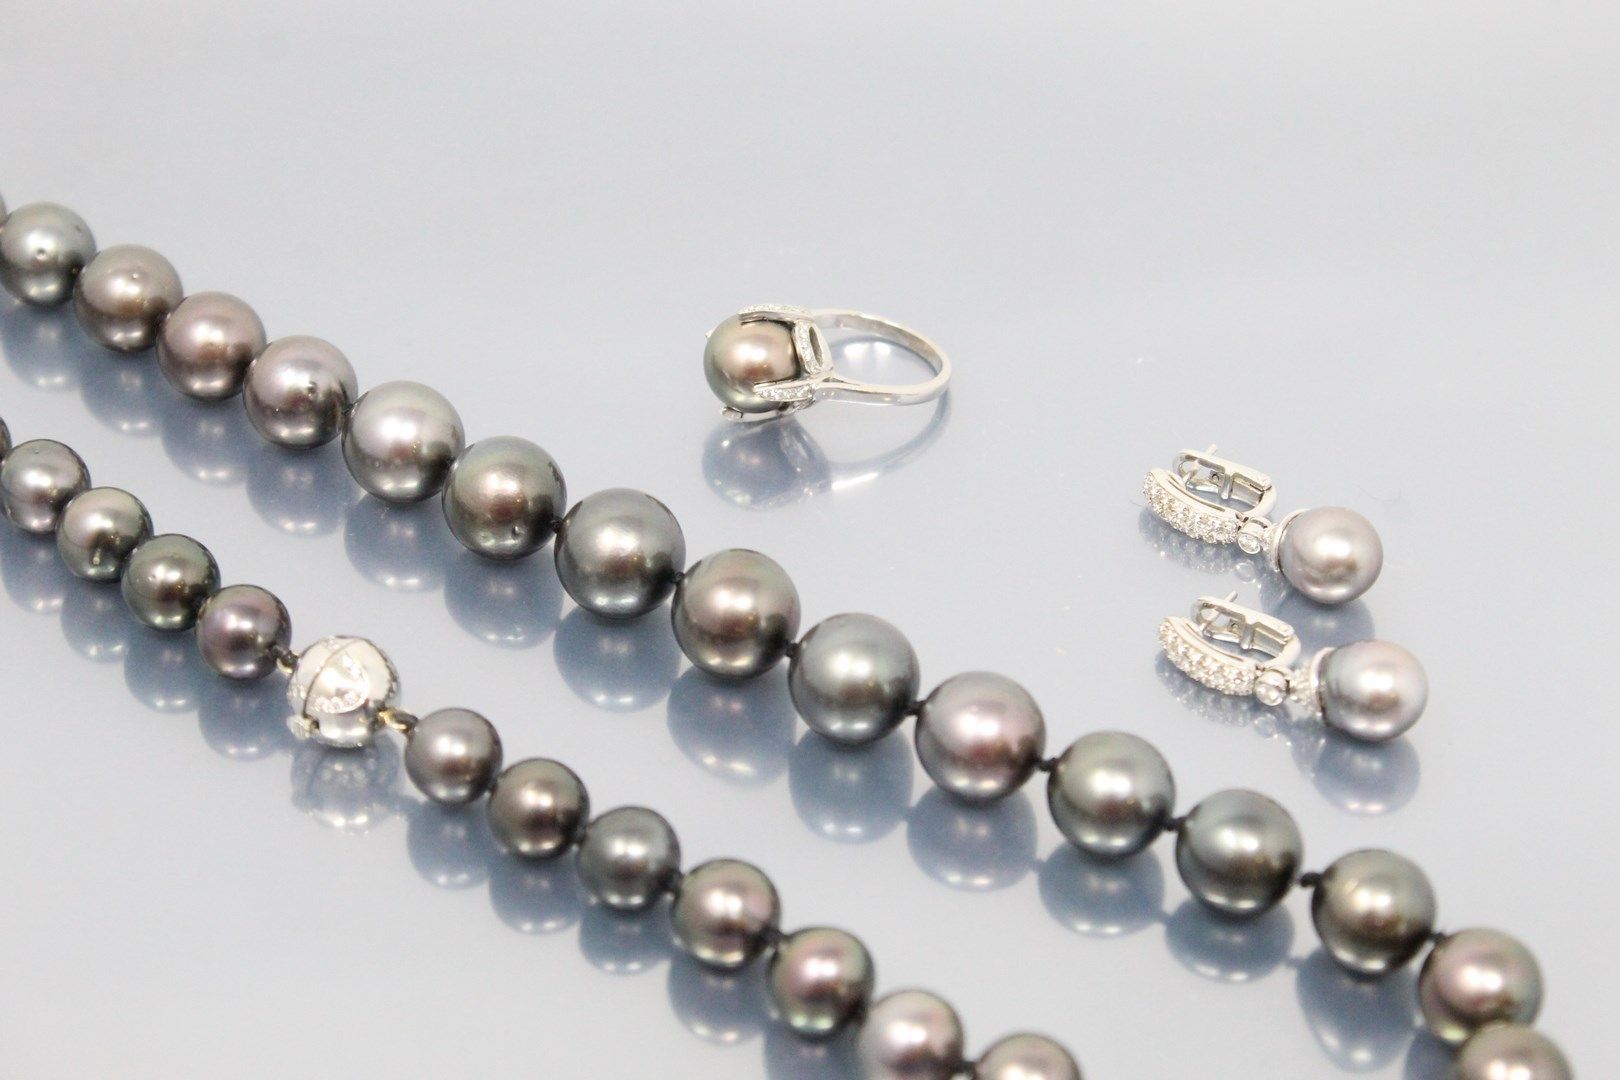 Null 18K(750)白金、灰色南海珍珠和钻石镶嵌，包括一条项链、一枚戒指和一对耳环。

- 这条项链由37颗圆形的南海灰色养殖珍珠组成，18K(750)白&hellip;